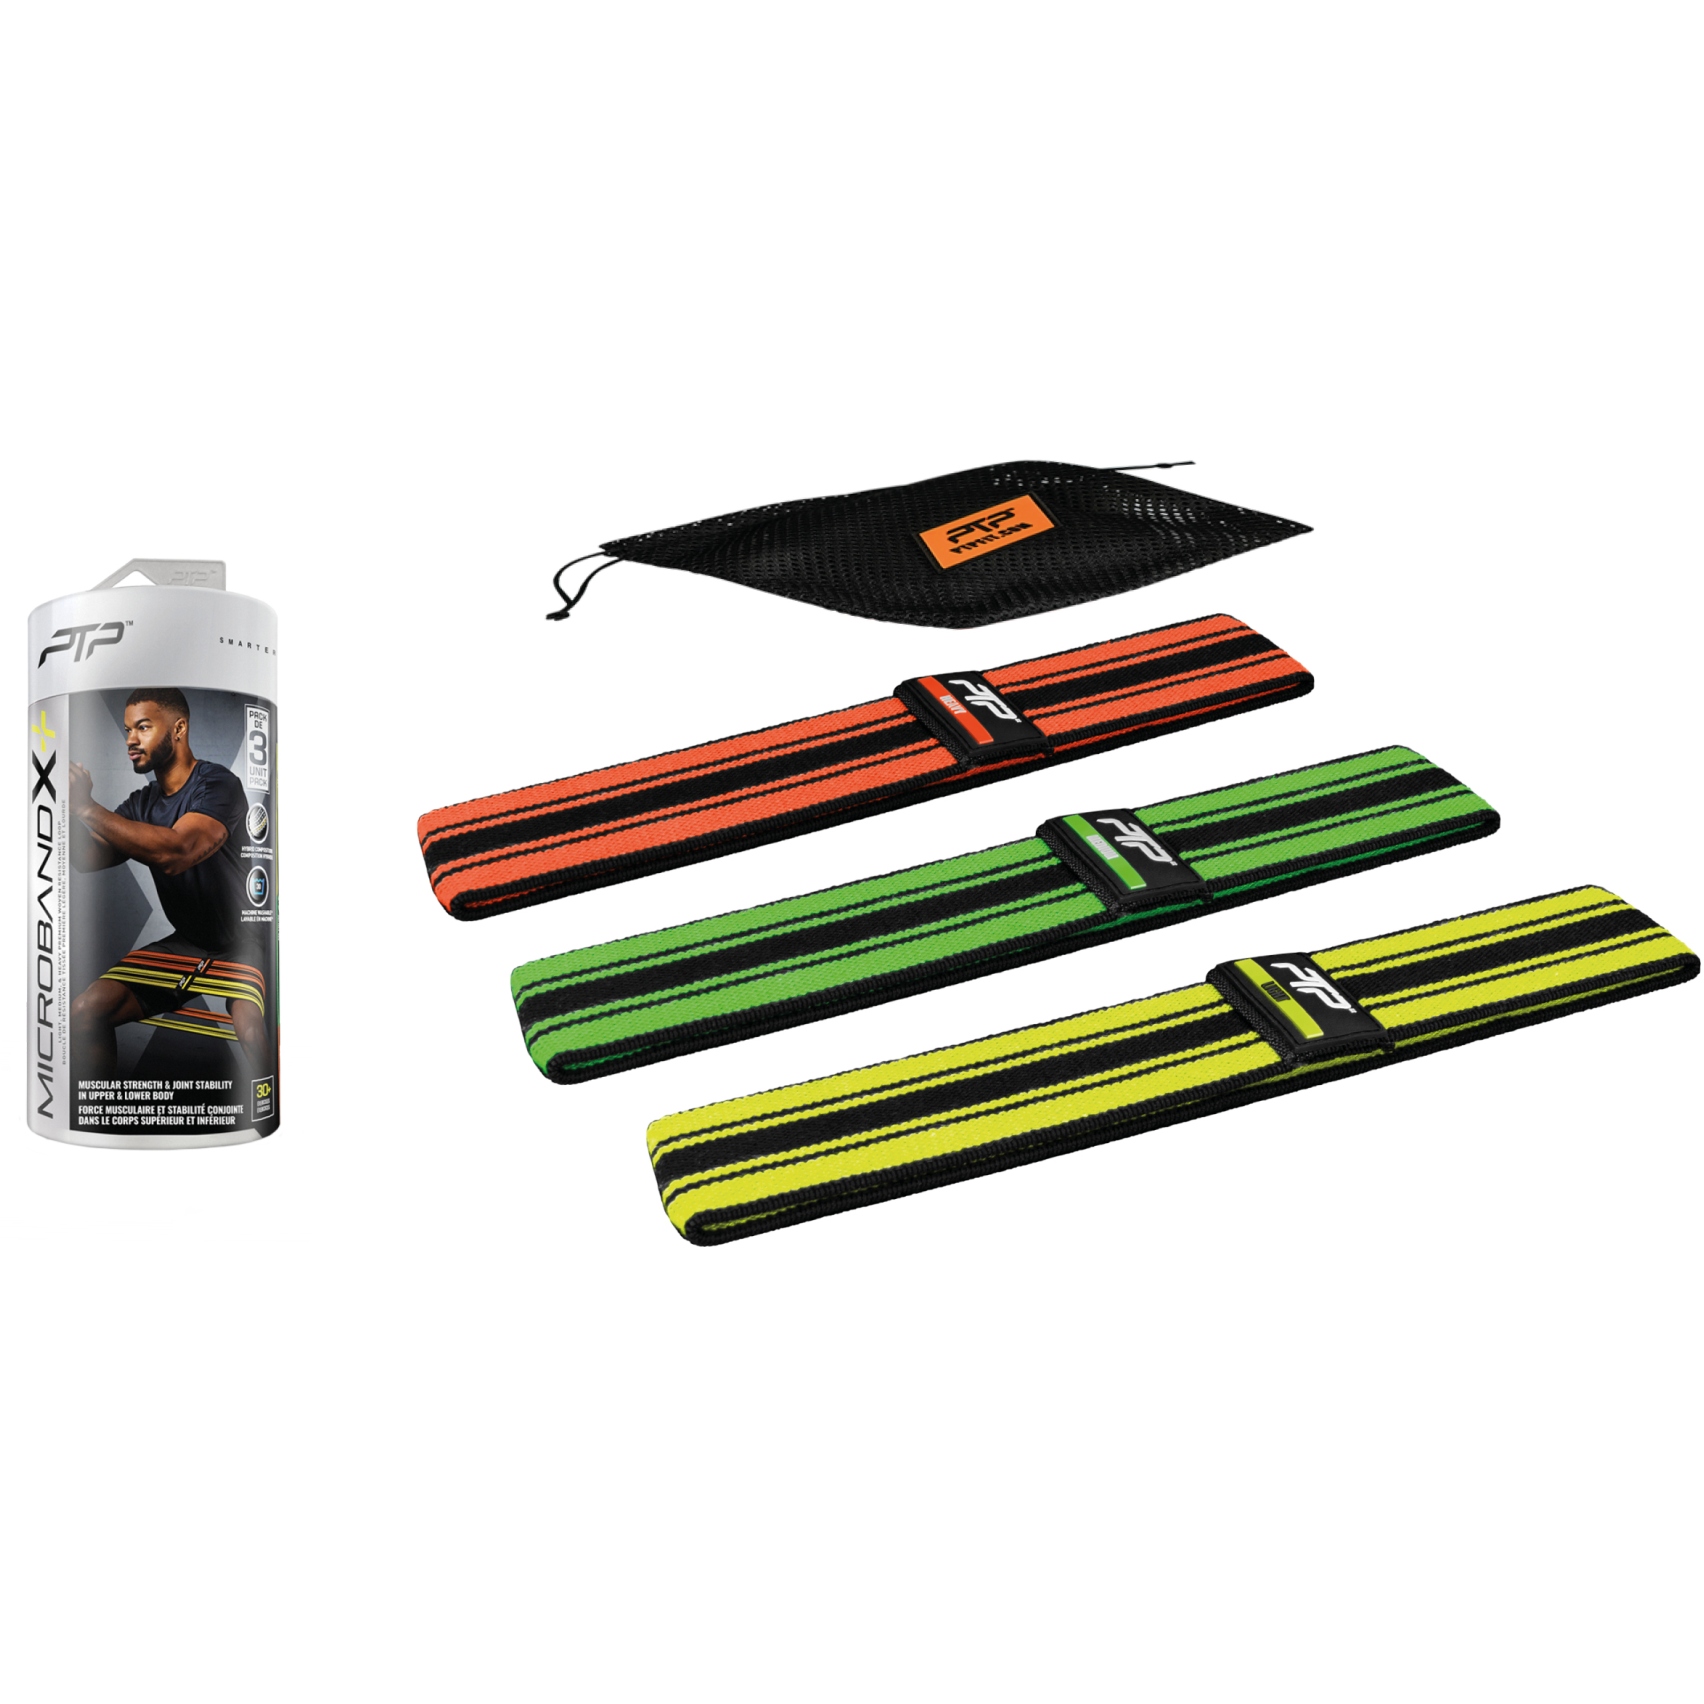 Produktbild von PTP Microband X Combo+ 3er Pack Widerstandsbänder - orange/green/yellow